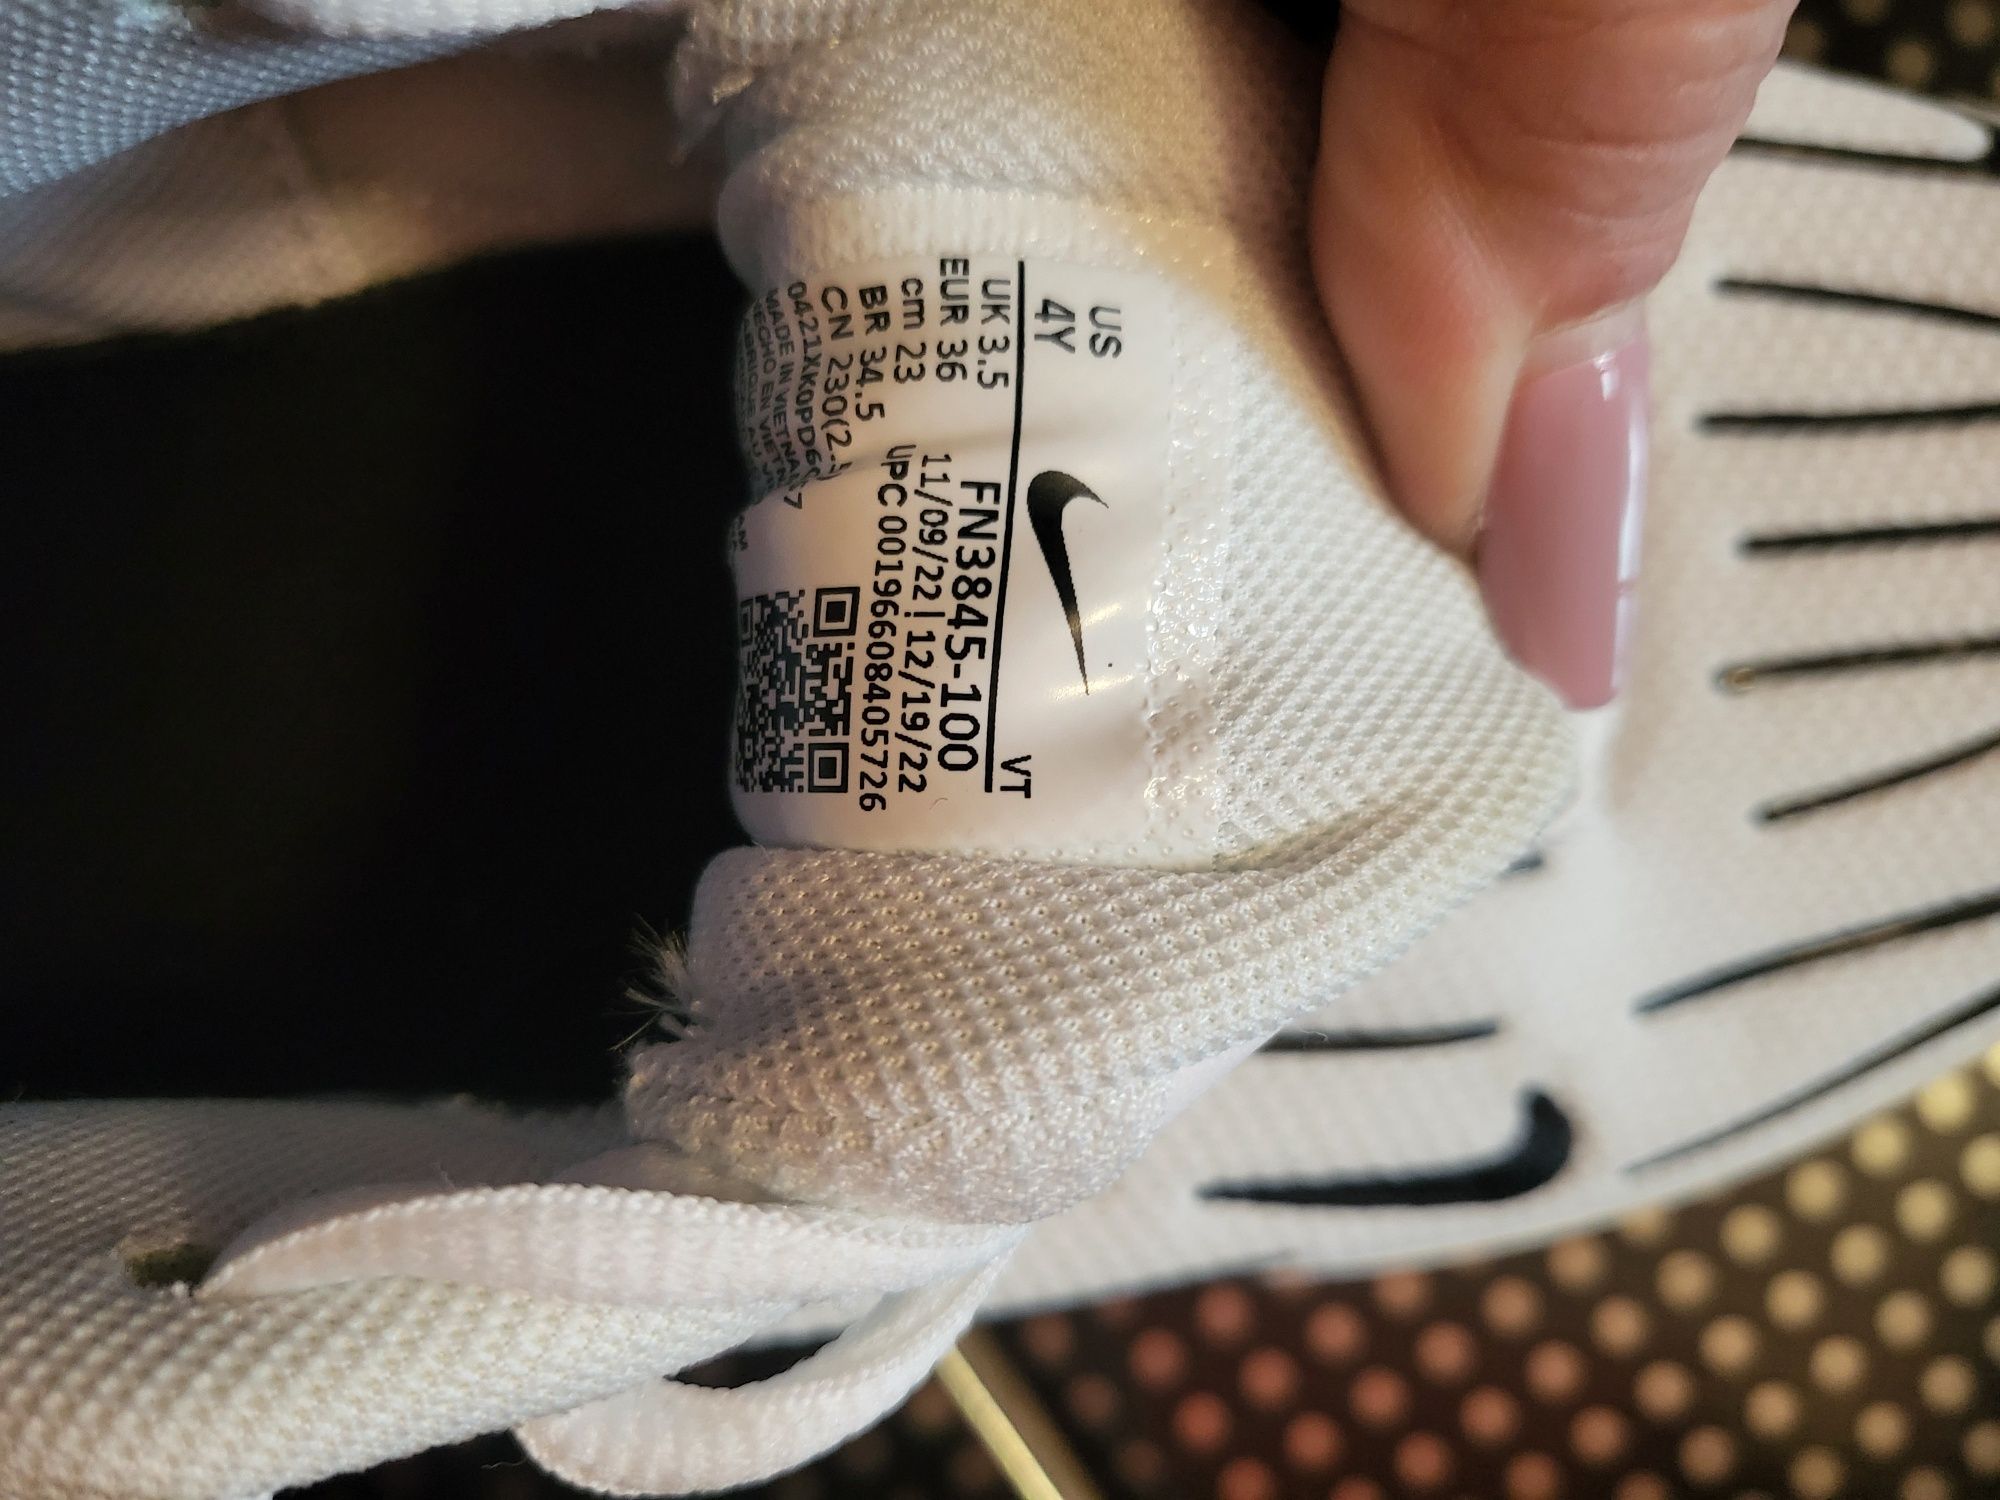 Adidasi Nike air max plus original